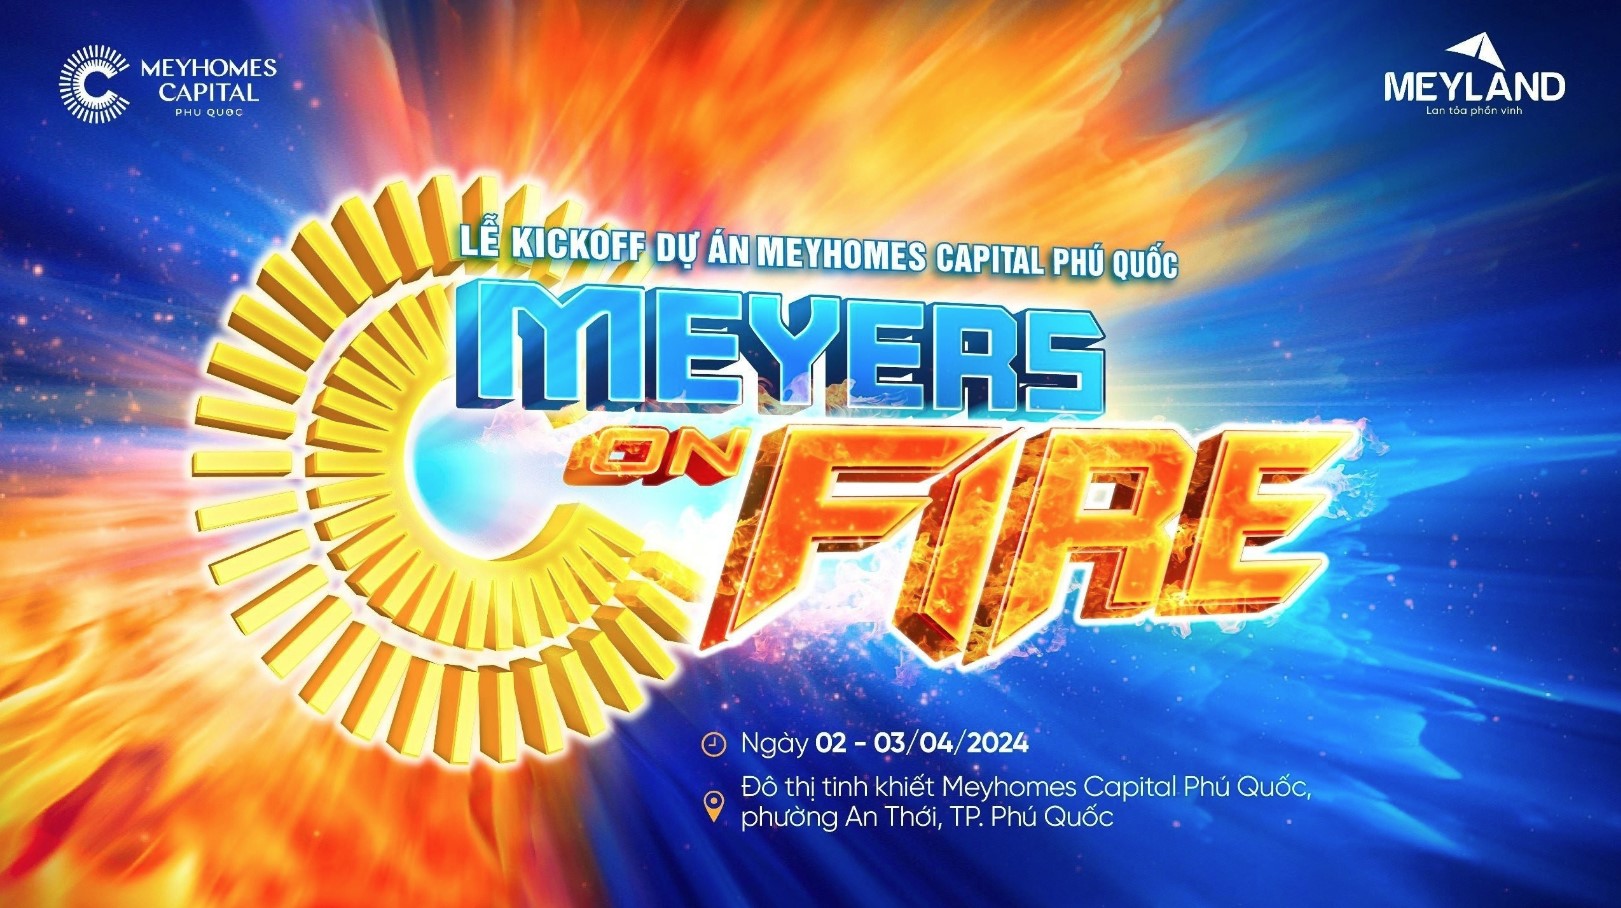 Lễ kick-off với chủ đề &ldquo;Meyers on Fire&rdquo; sẽ diễn ra từ ng&agrave;y 2 - 3/4/2024.